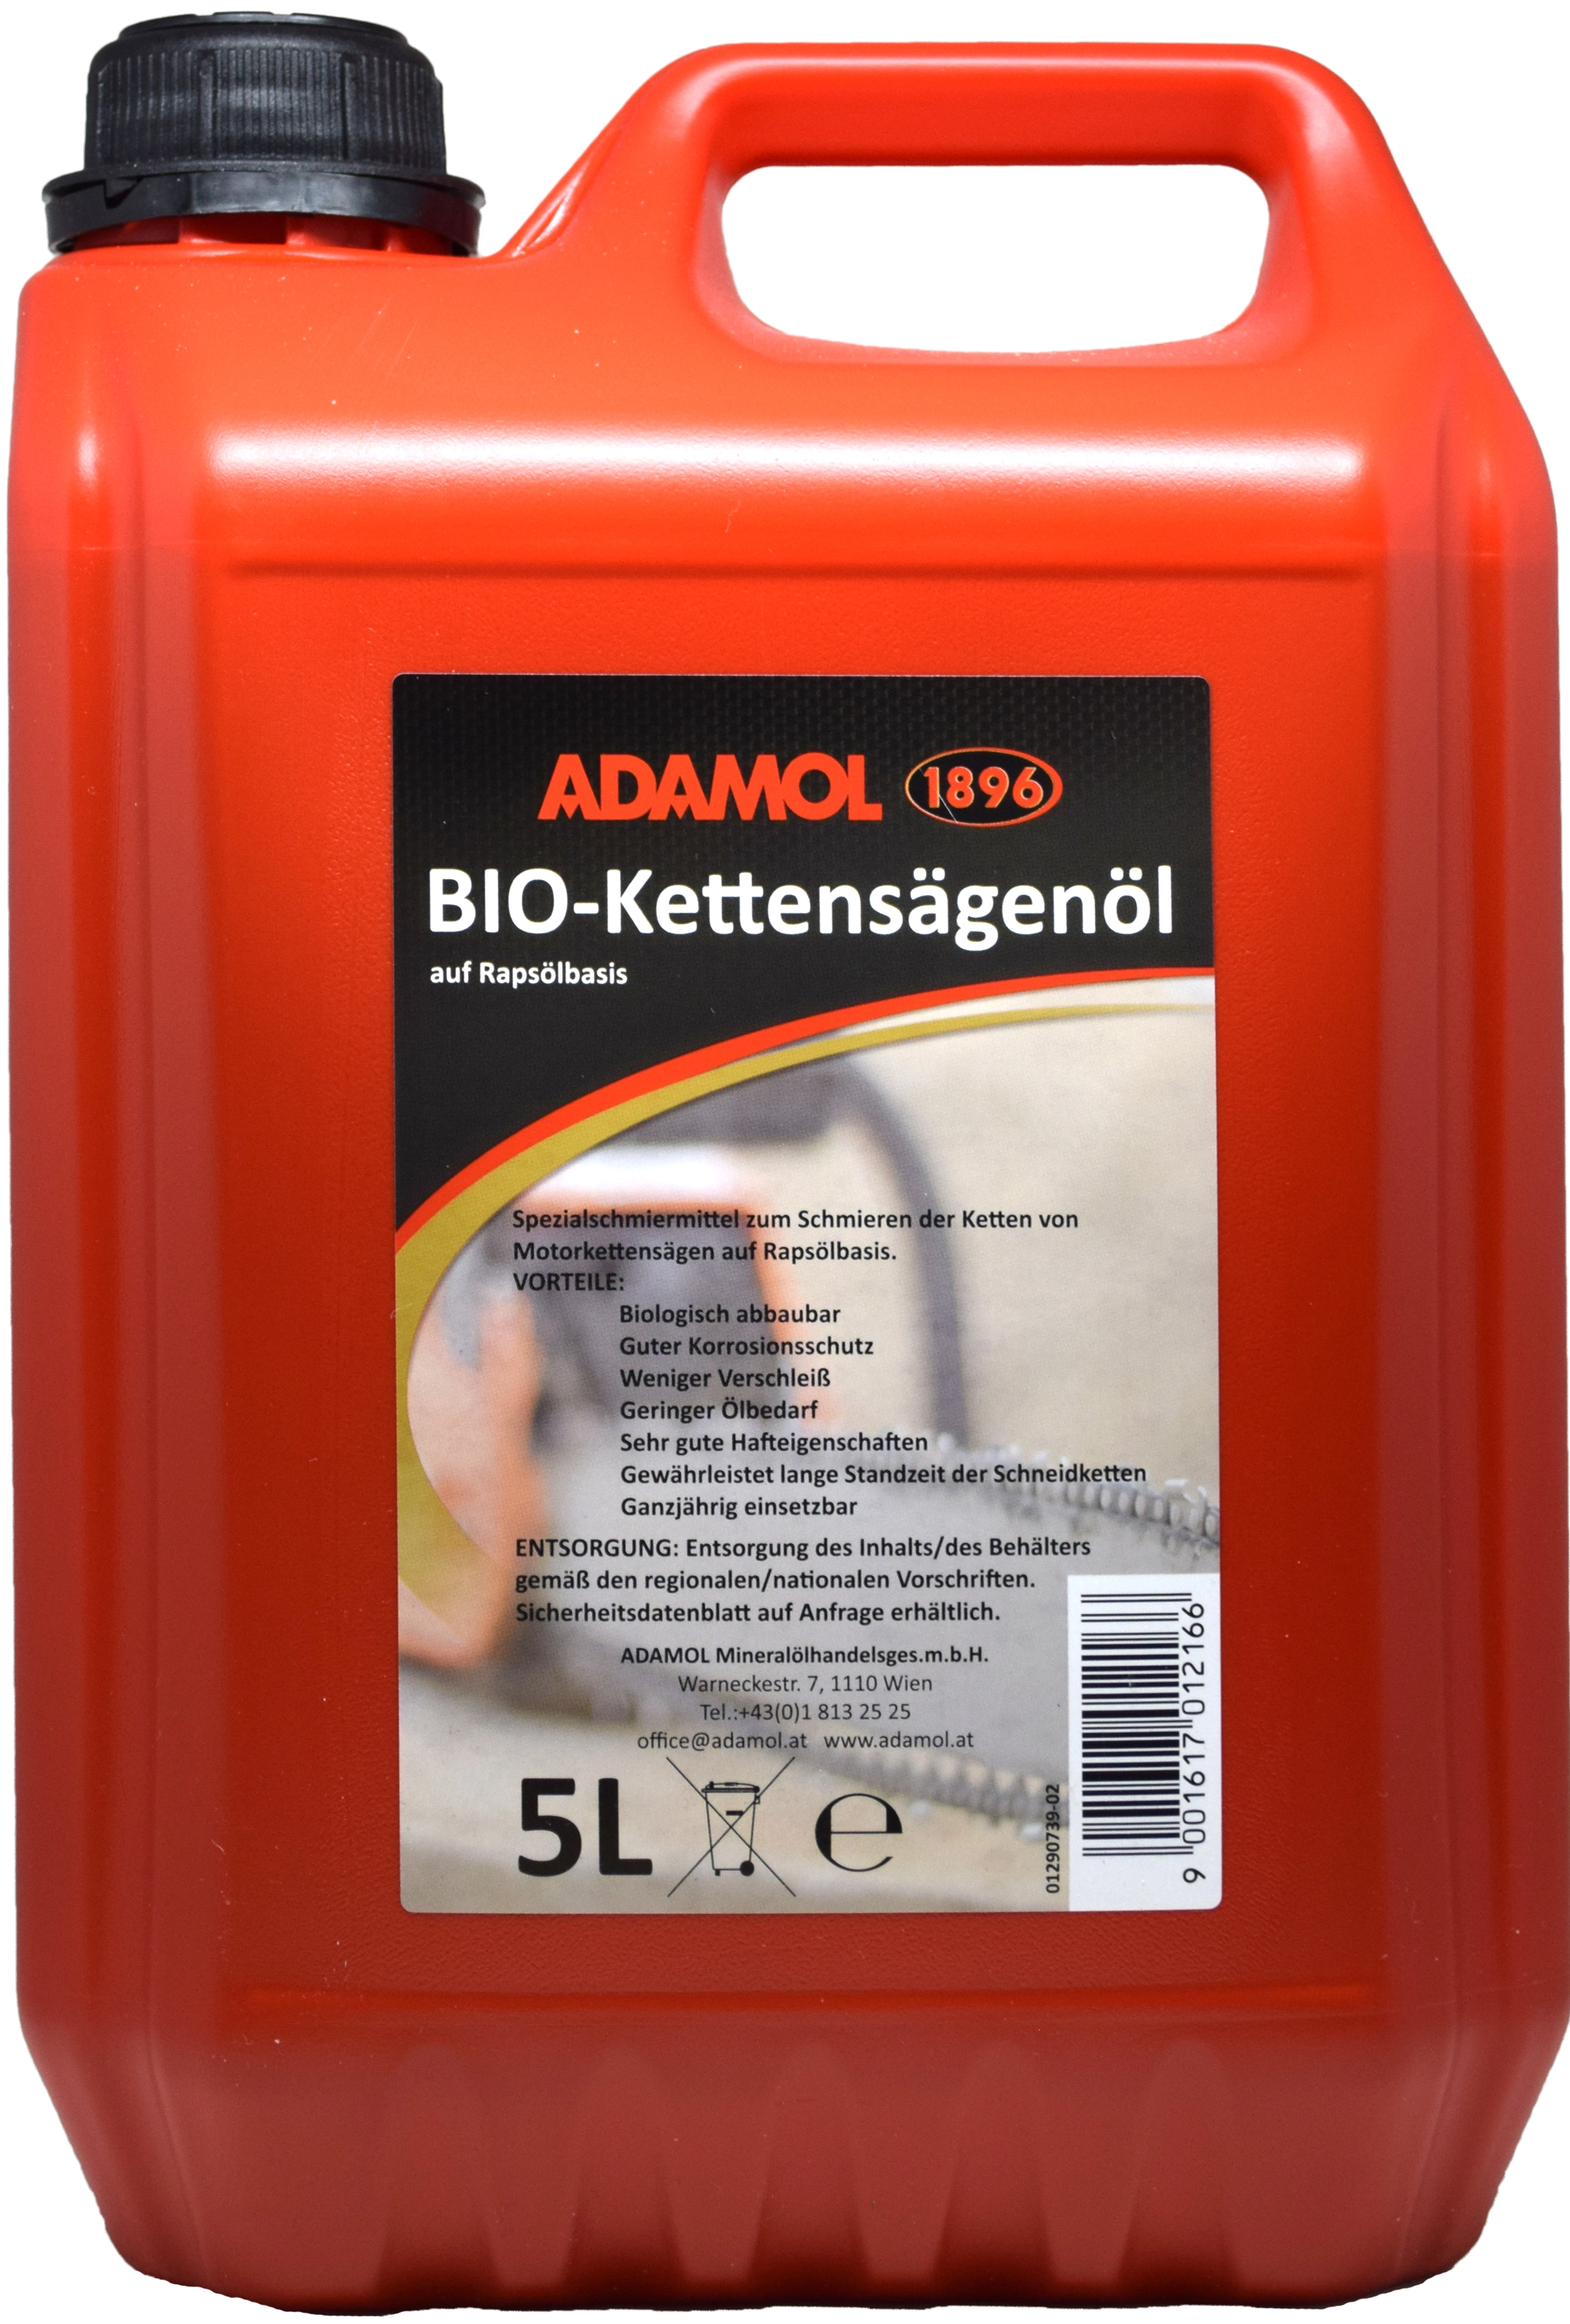 Adamol 1896 BIO-Kettensägenöl 5l kaufen bei OBI